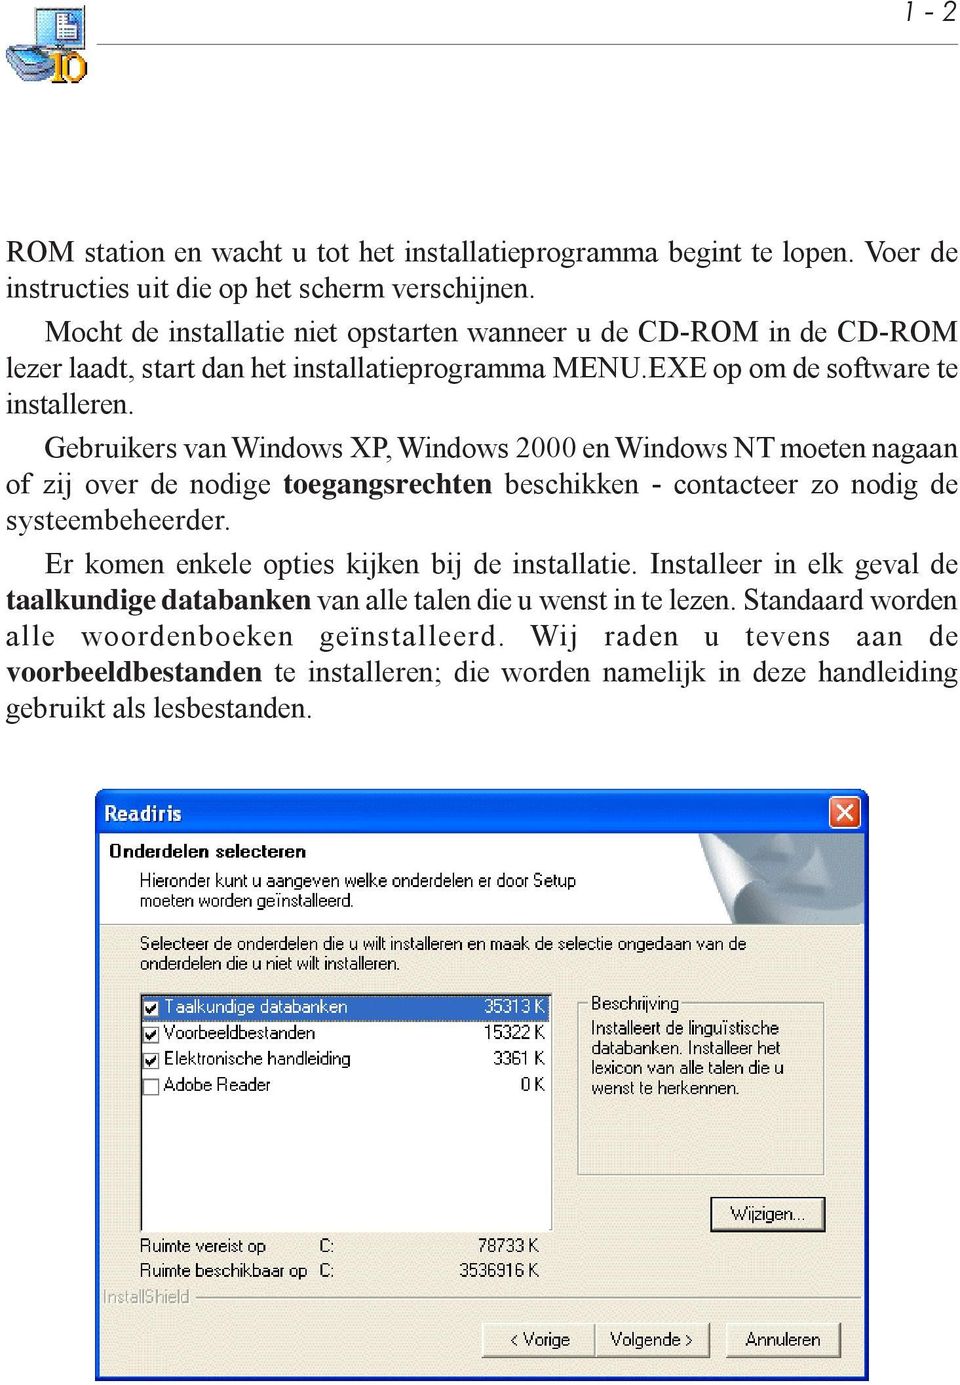 Gebruikers van Windows XP, Windows 2000 en Windows NT moeten nagaan of zij over de nodige toegangsrechten beschikken - contacteer zo nodig de systeembeheerder.